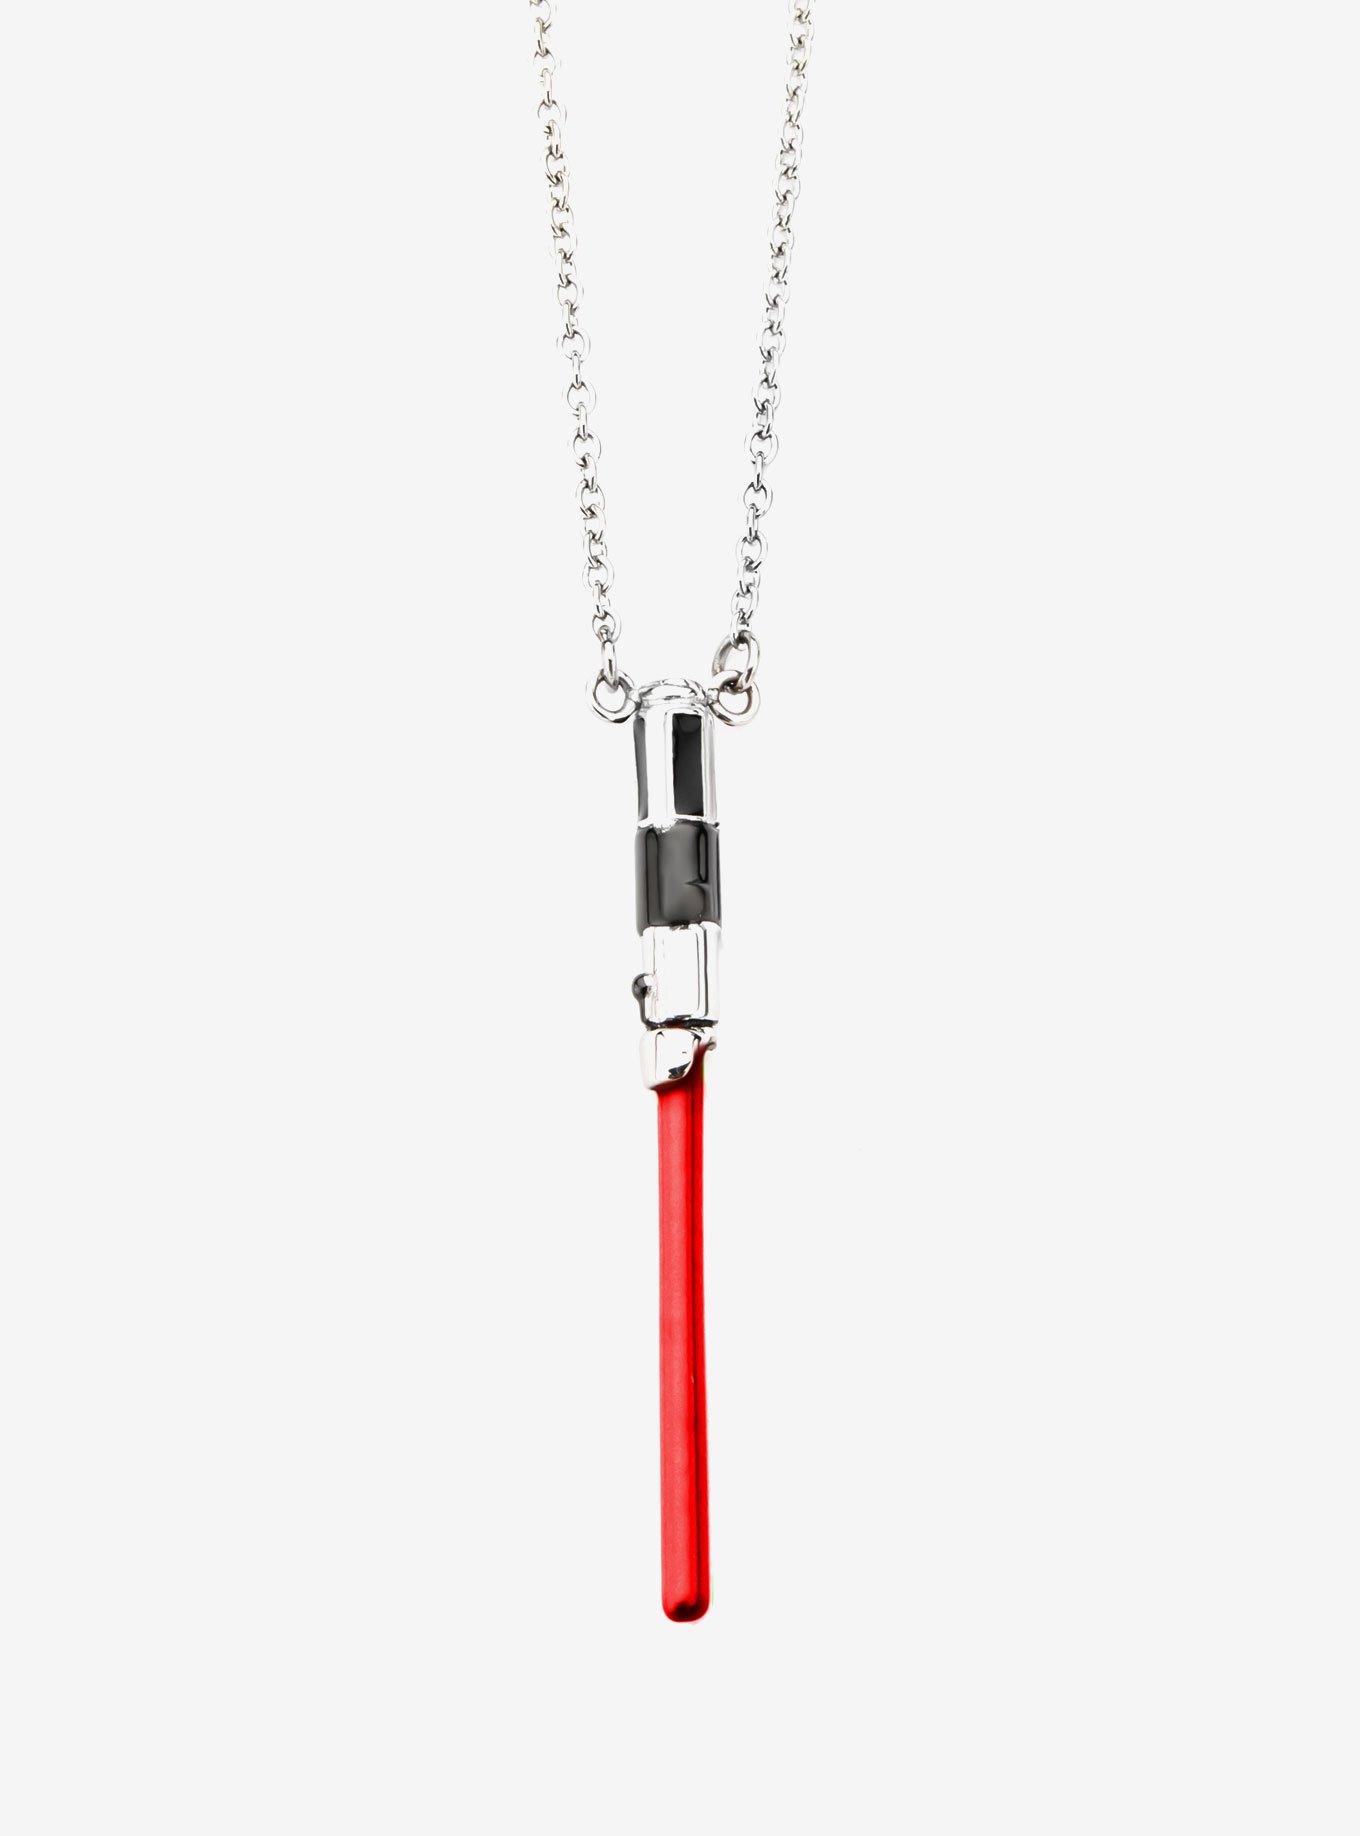 Star Wars Darth Vader Lightsaber Stainless Steel Pendant Necklace, , hi-res